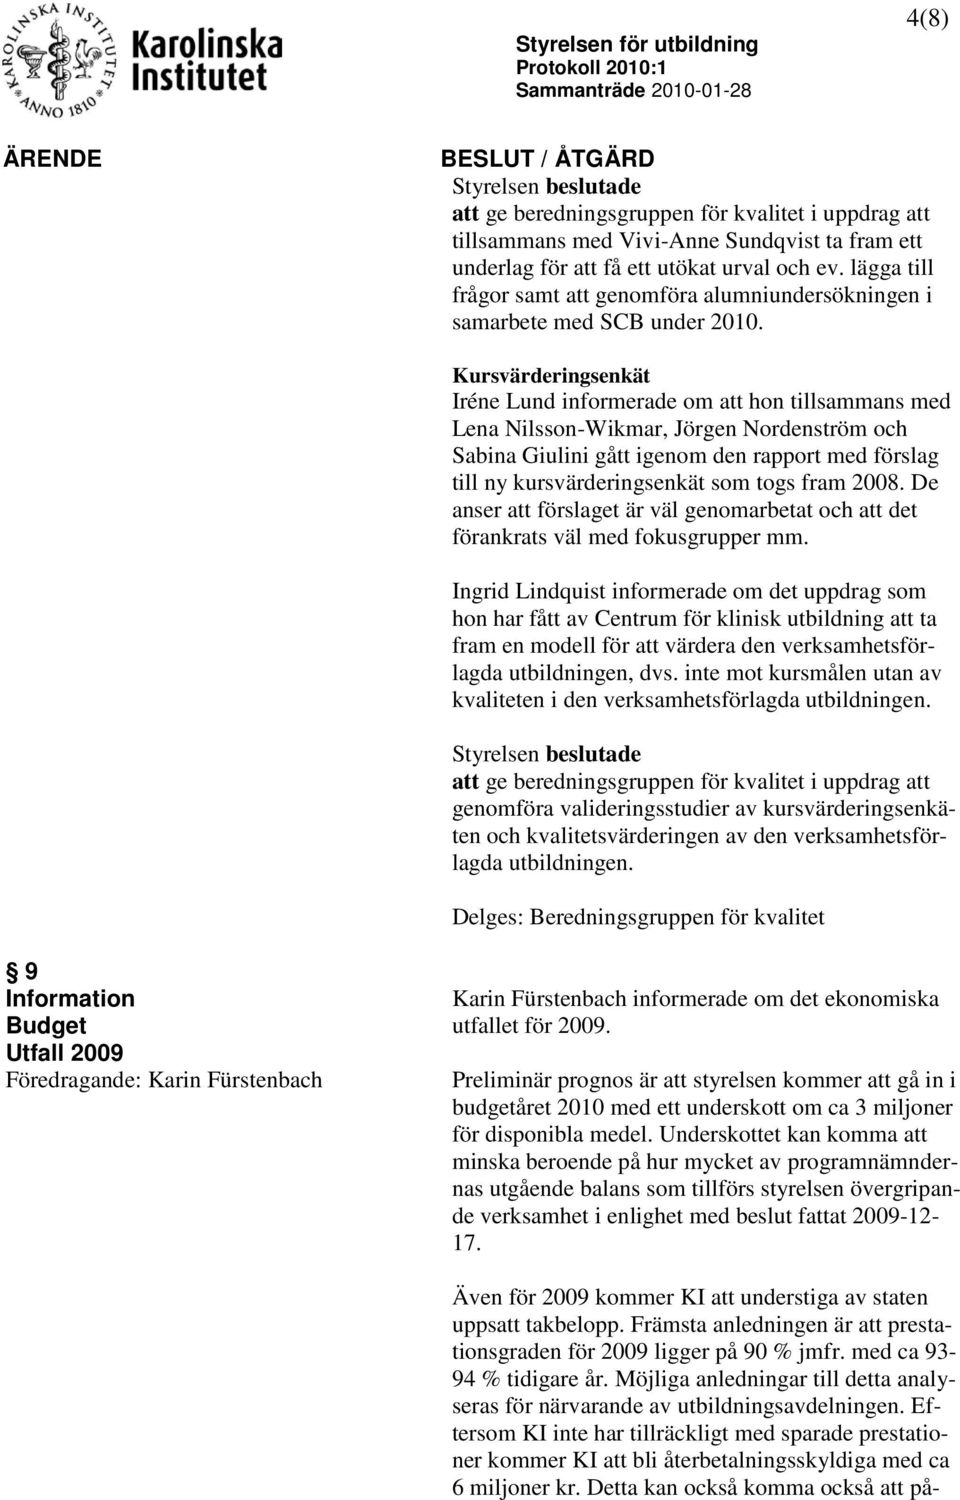 Kursvärderingsenkät Iréne Lund informerade om att hon tillsammans med Lena Nilsson-Wikmar, Jörgen Nordenström och Sabina Giulini gått igenom den rapport med förslag till ny kursvärderingsenkät som